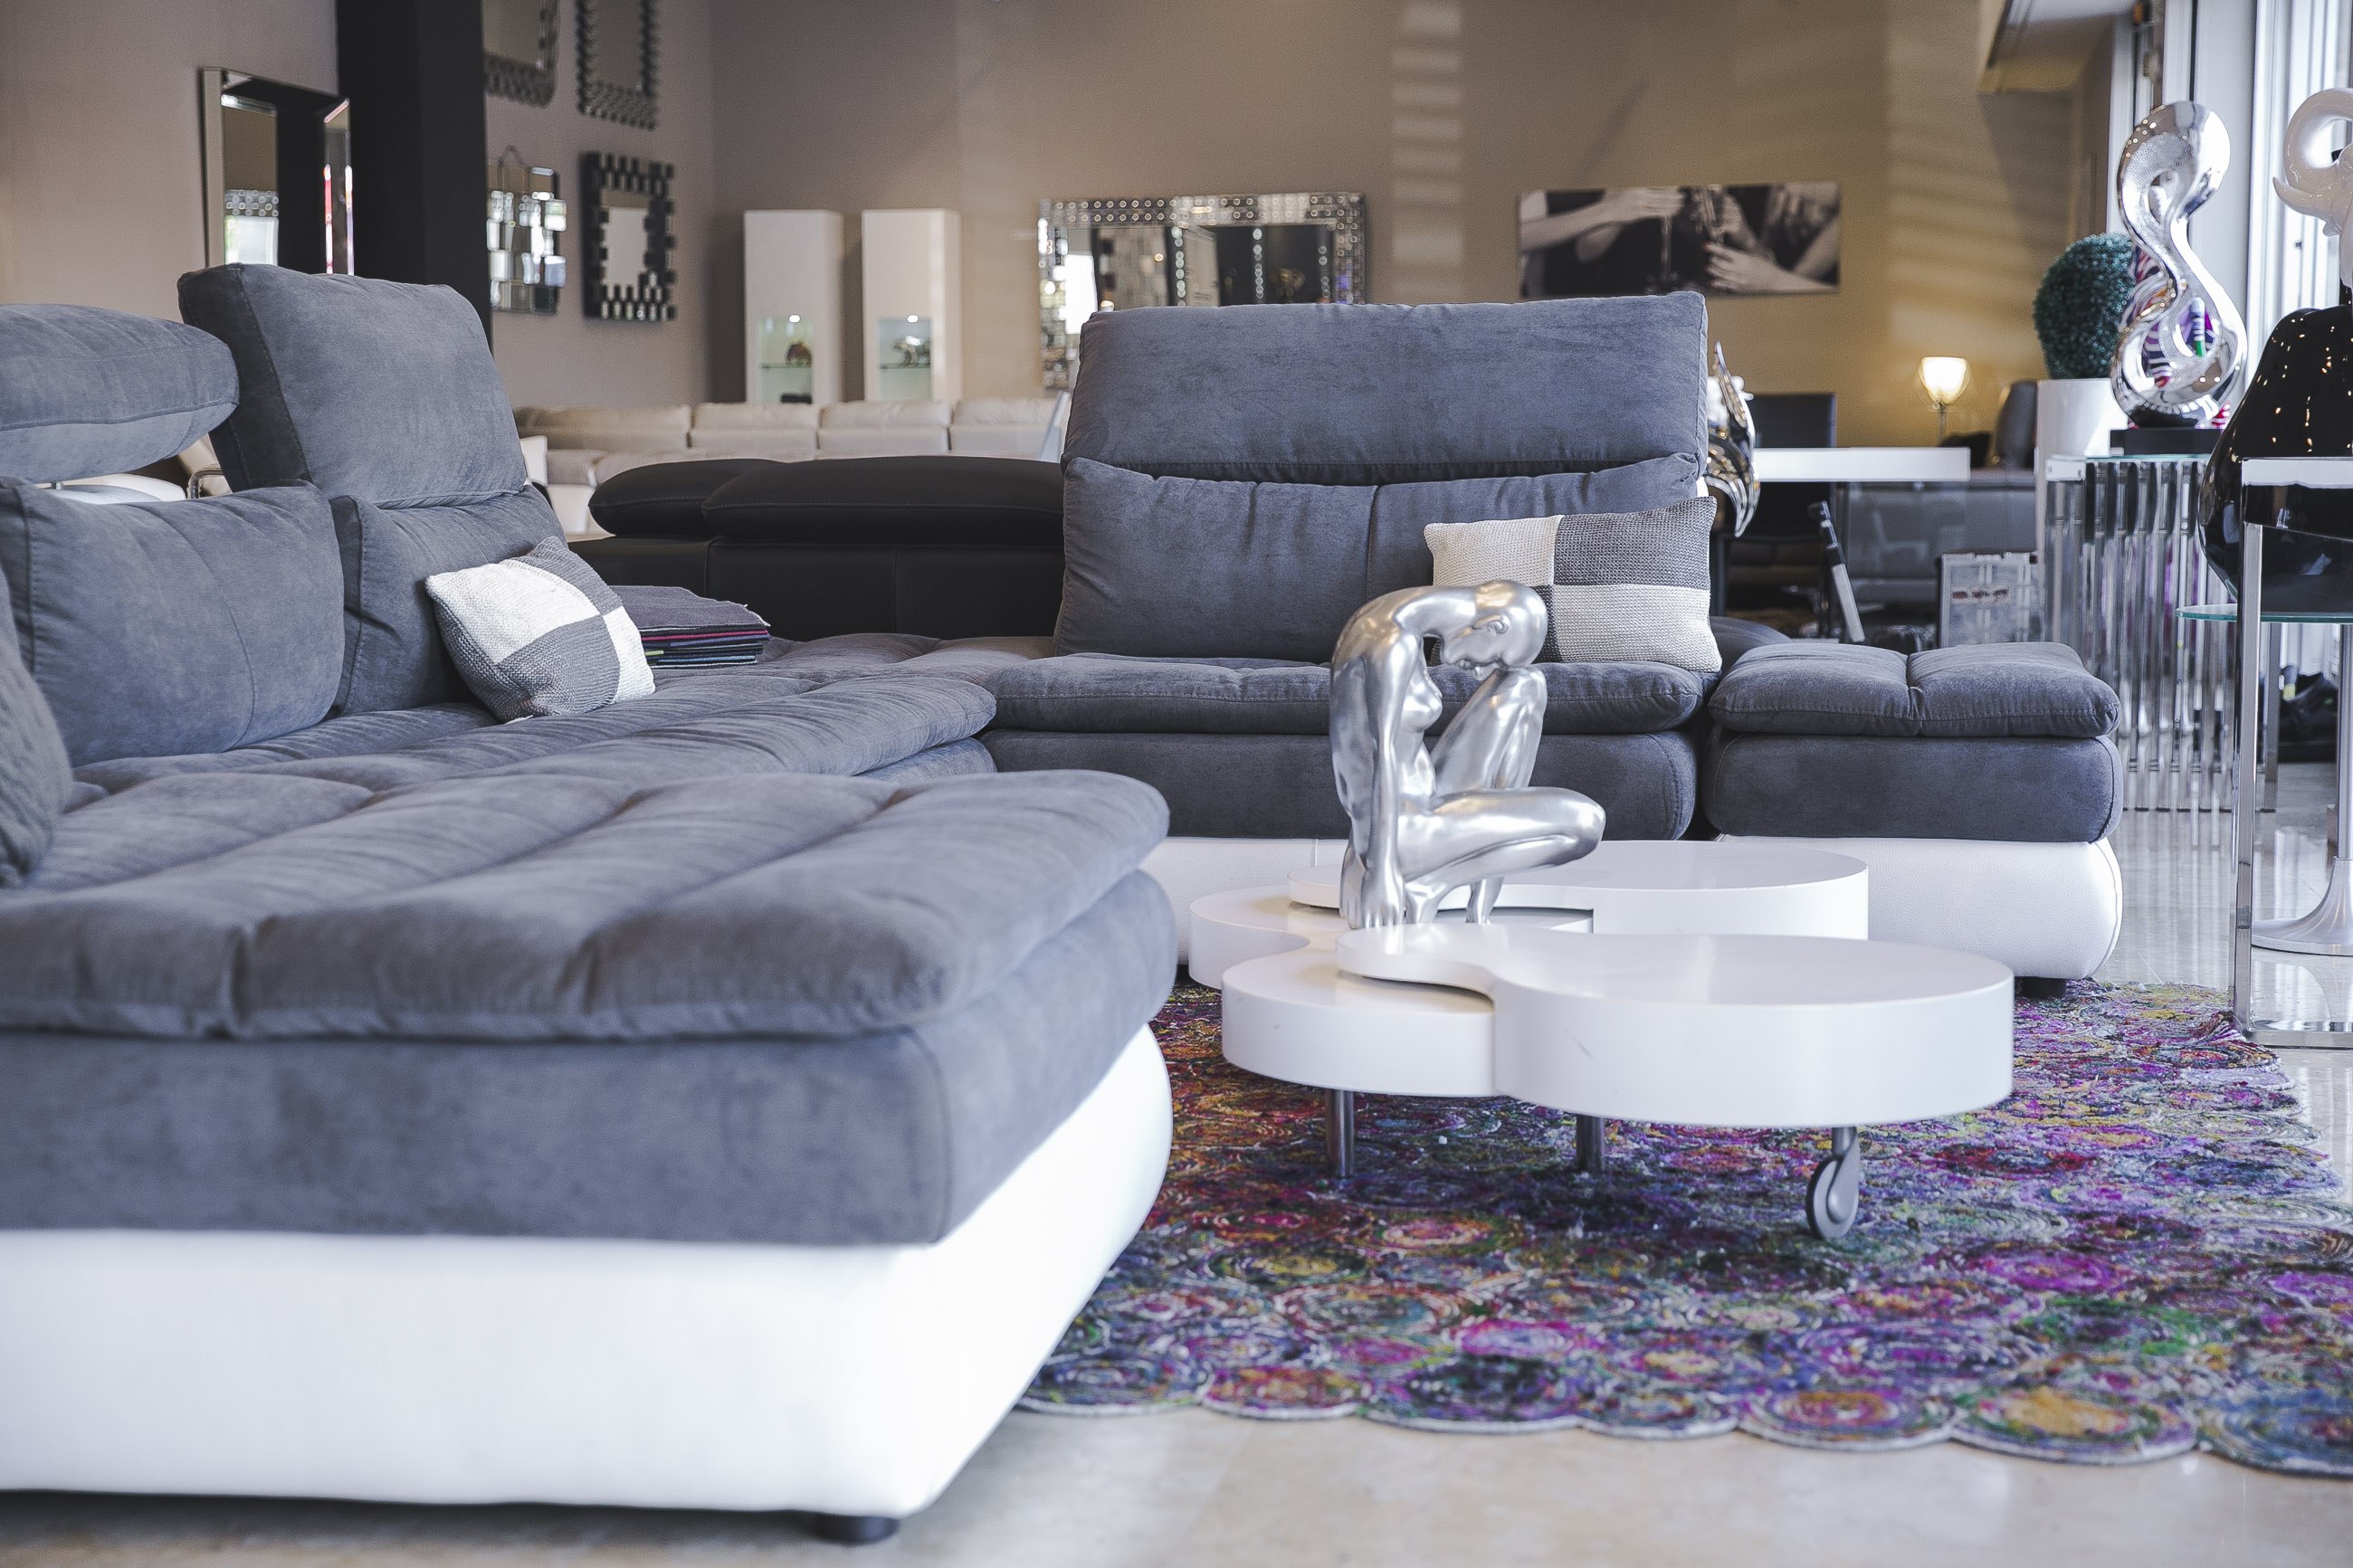 Сеть французской мебели Home Salons в честь открытия предлагает кожаные диваны по цене тканевых